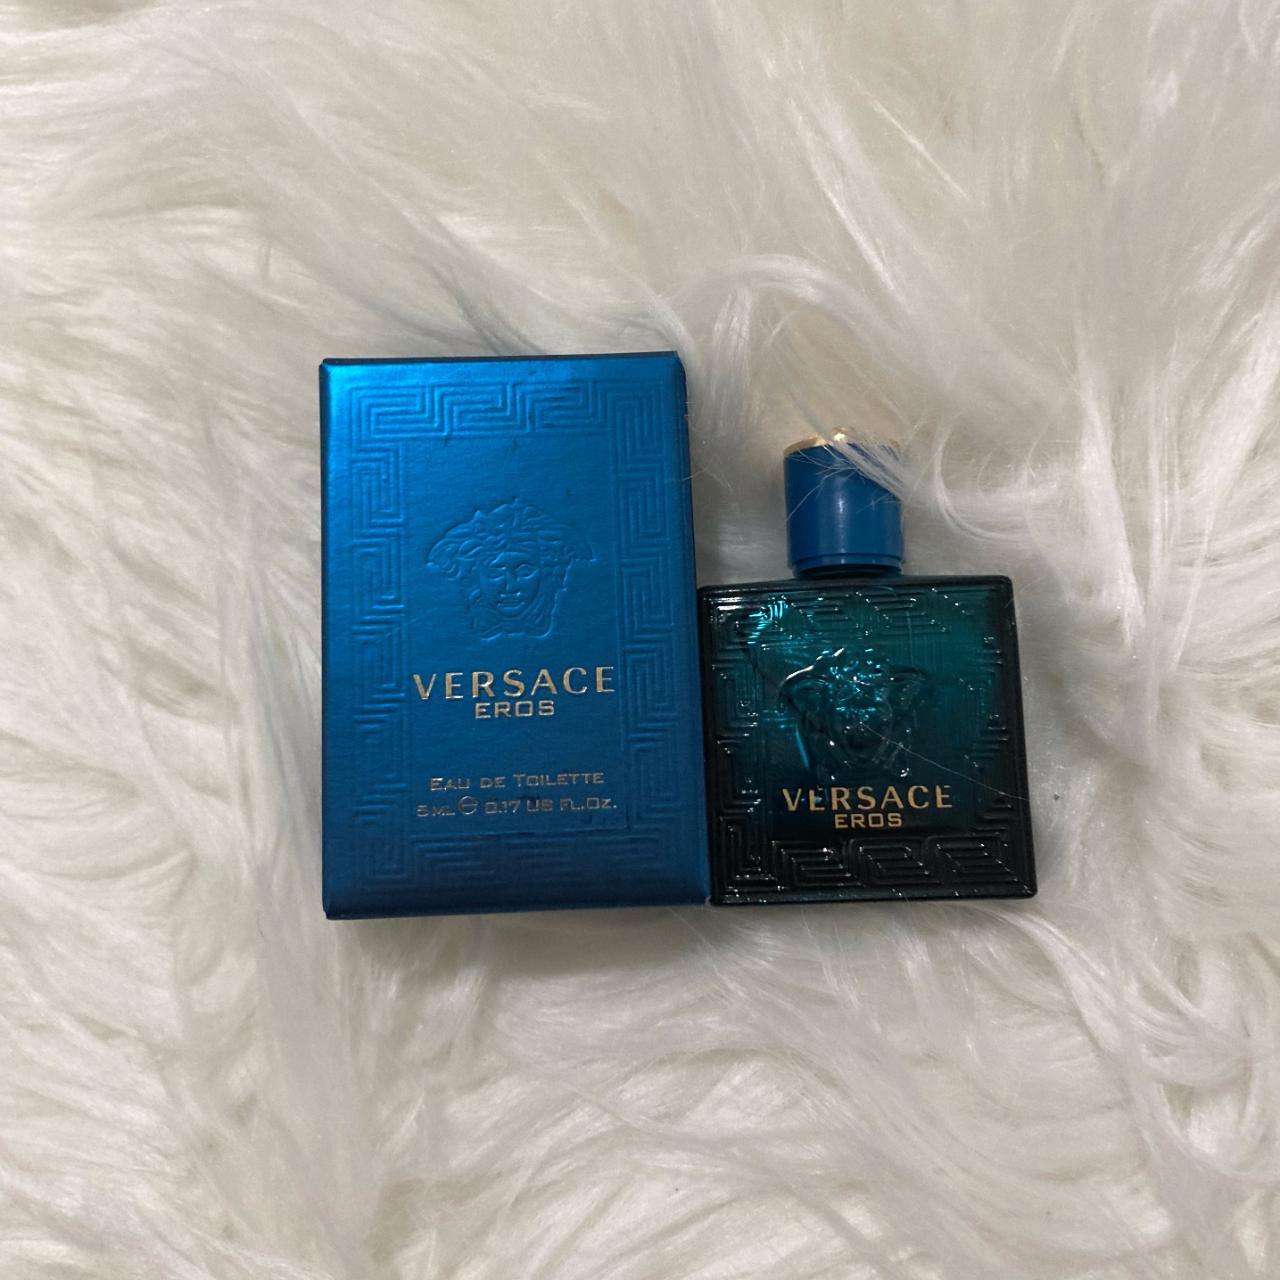 Versace Eros Mens Cologne 0.17 oz mini 🌹 Mens... - Depop